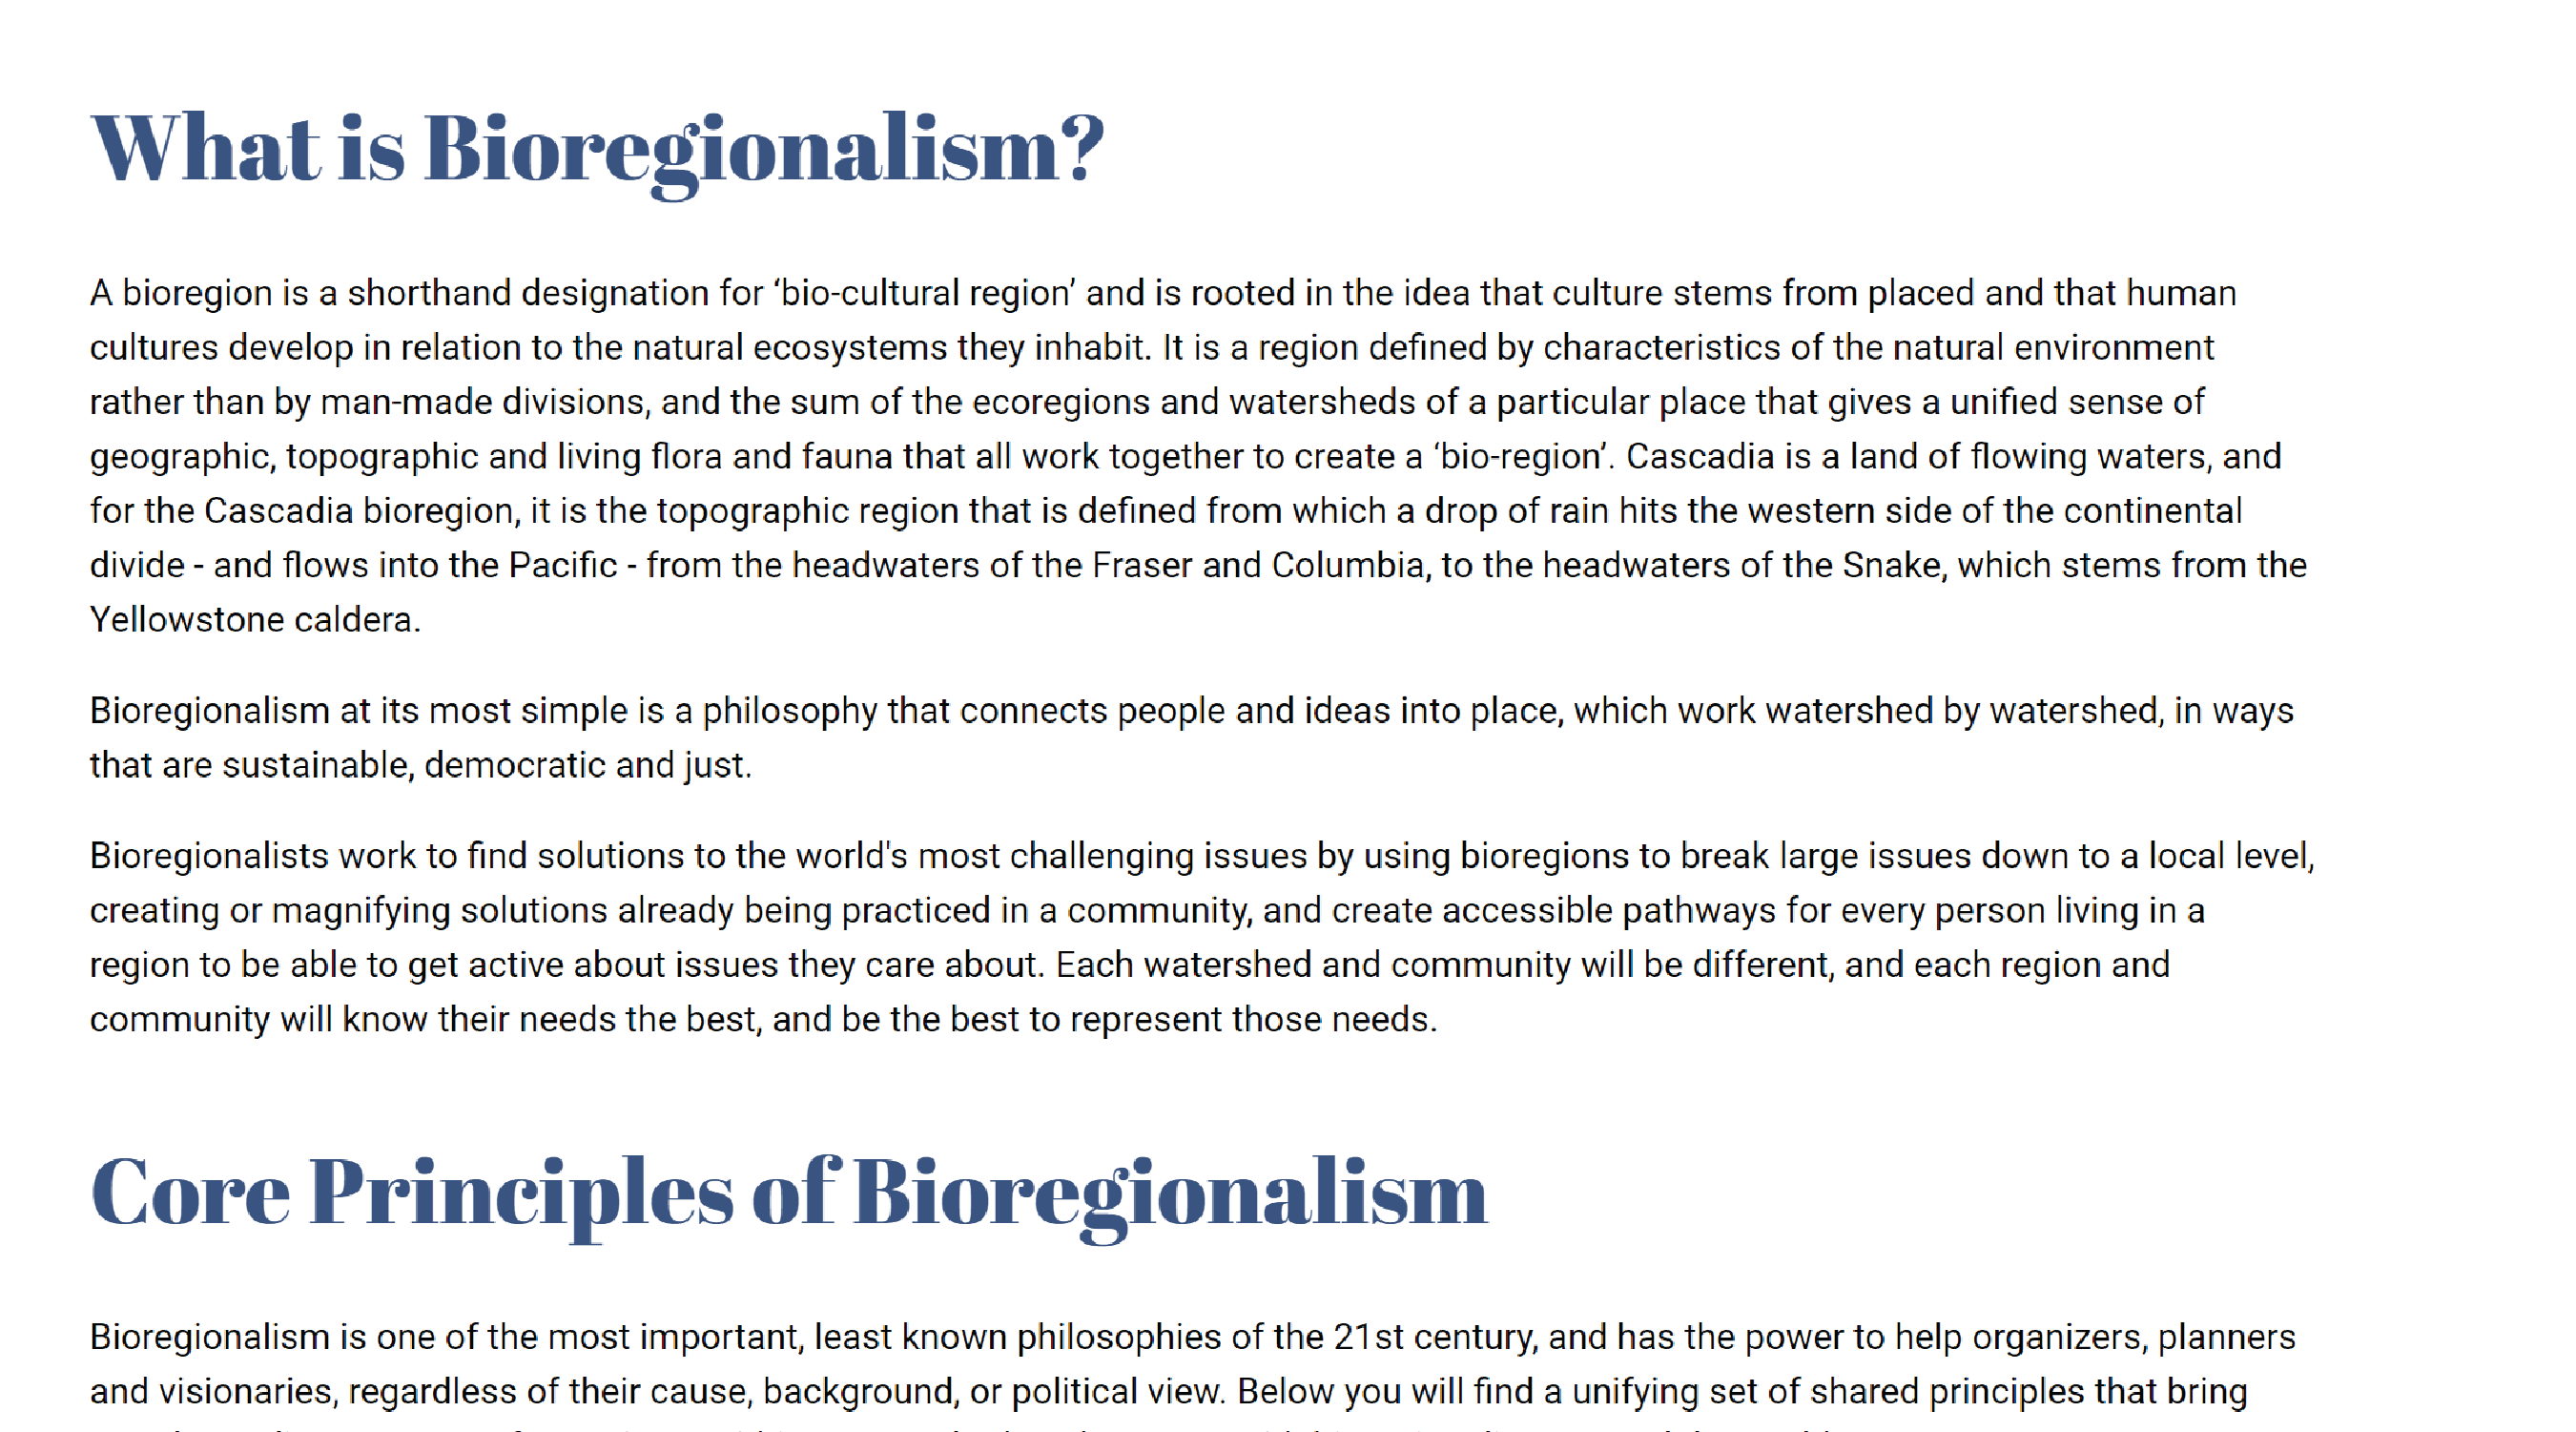 What is Bioregionalism